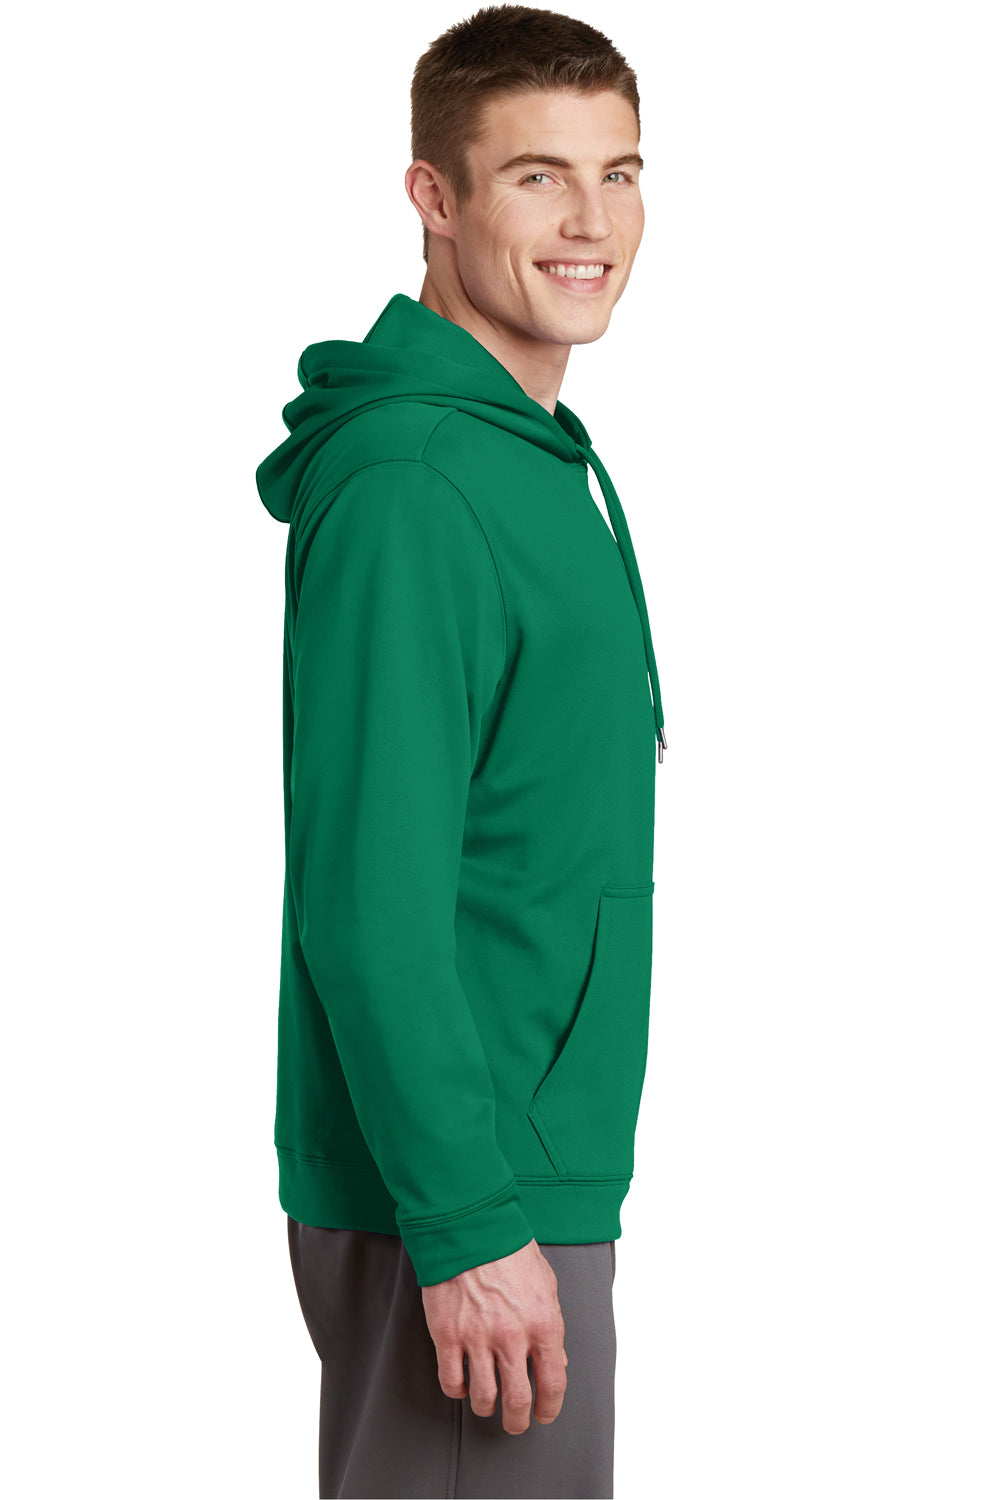 Sport-Tek F244 Mens Sport-Wick Moisture Wicking Fleece Hooded Sweatshirt Hoodie Kelly Green Side